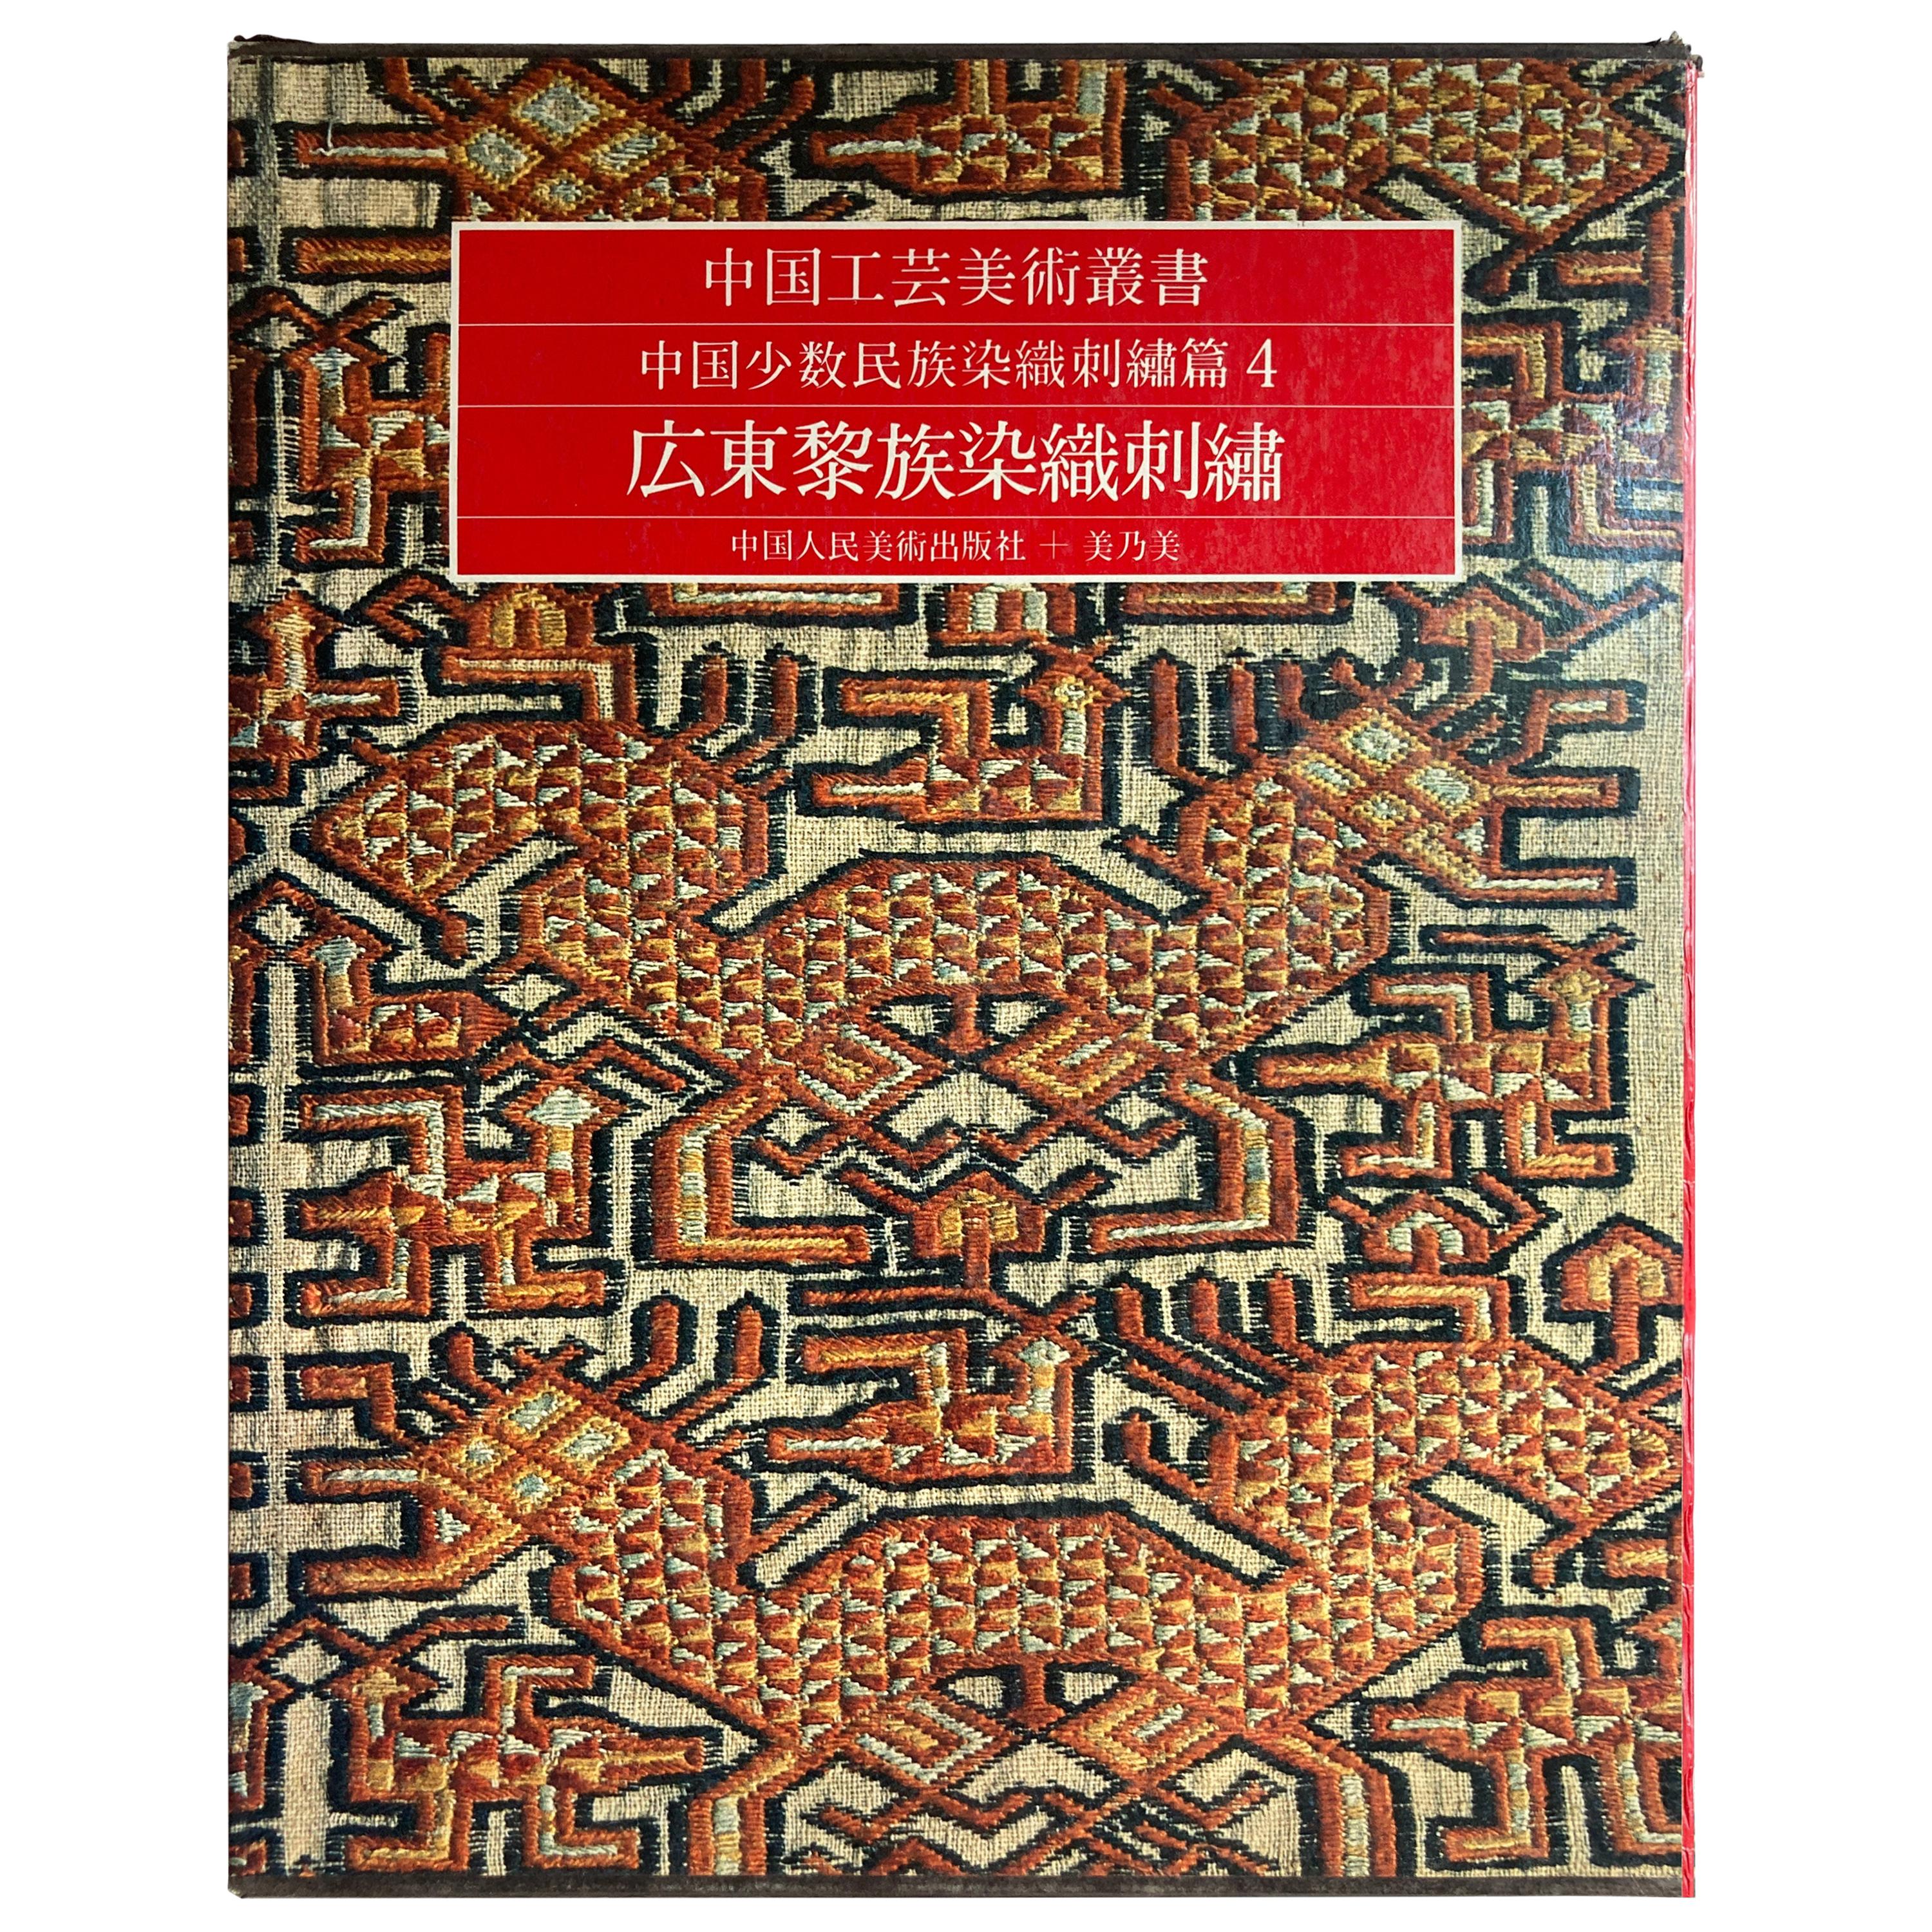 Édition chinoise ancienne de textiles et de broderies